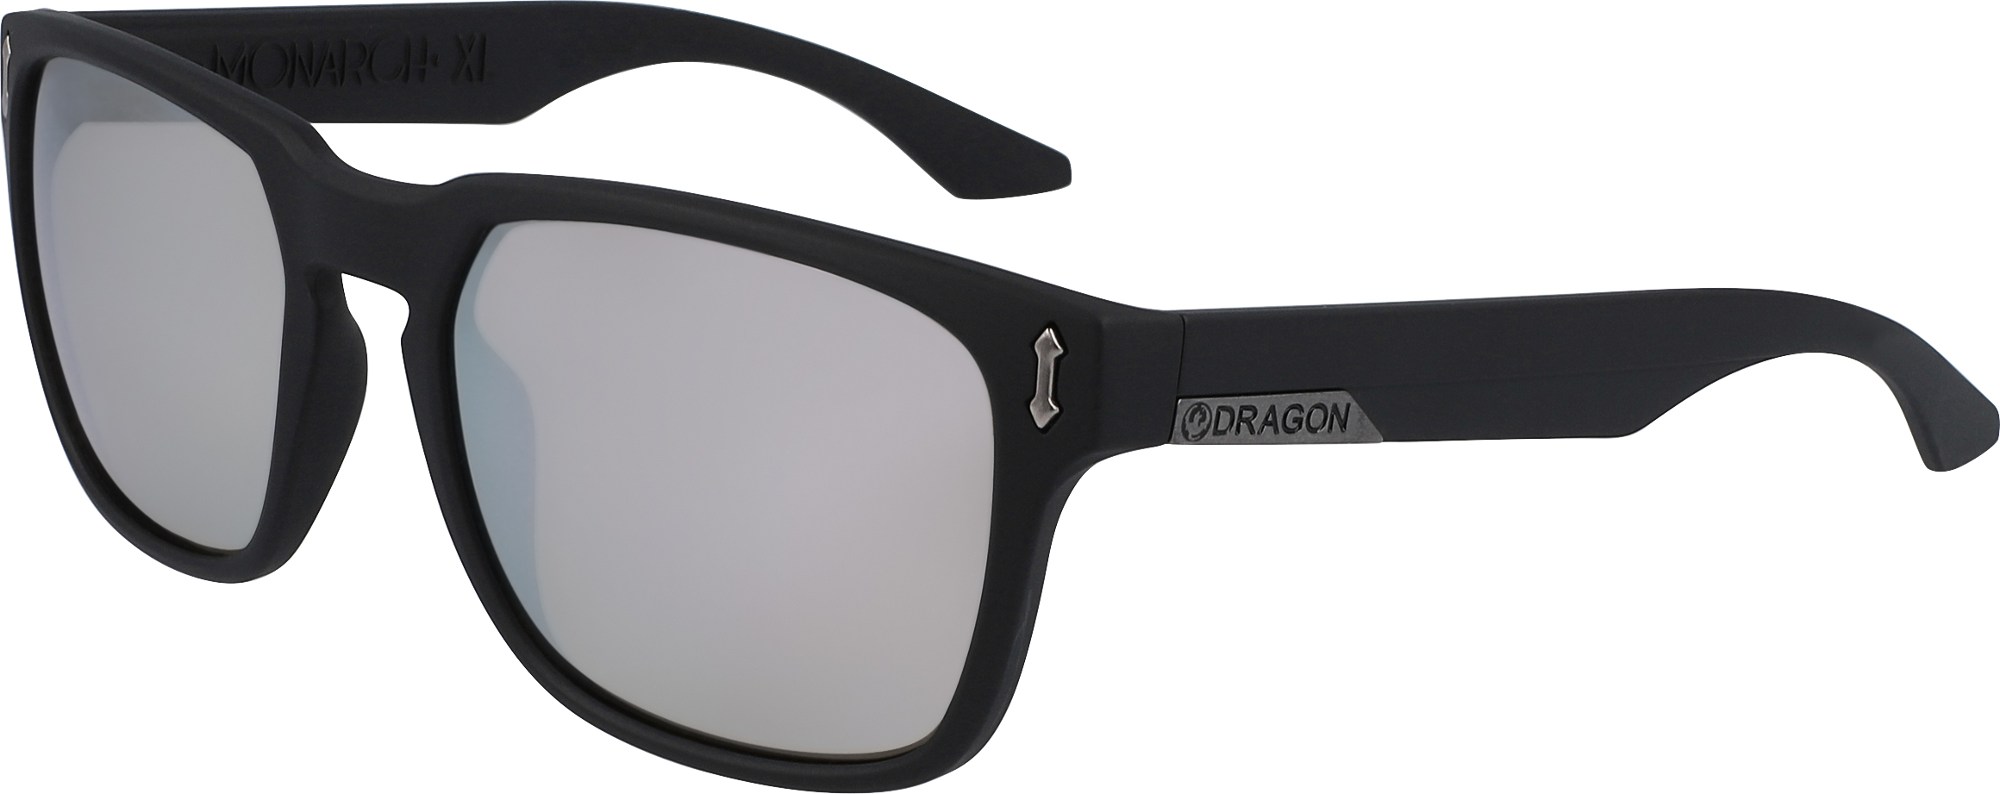 Солнцезащитные очки Monarch XL Dragon, черный